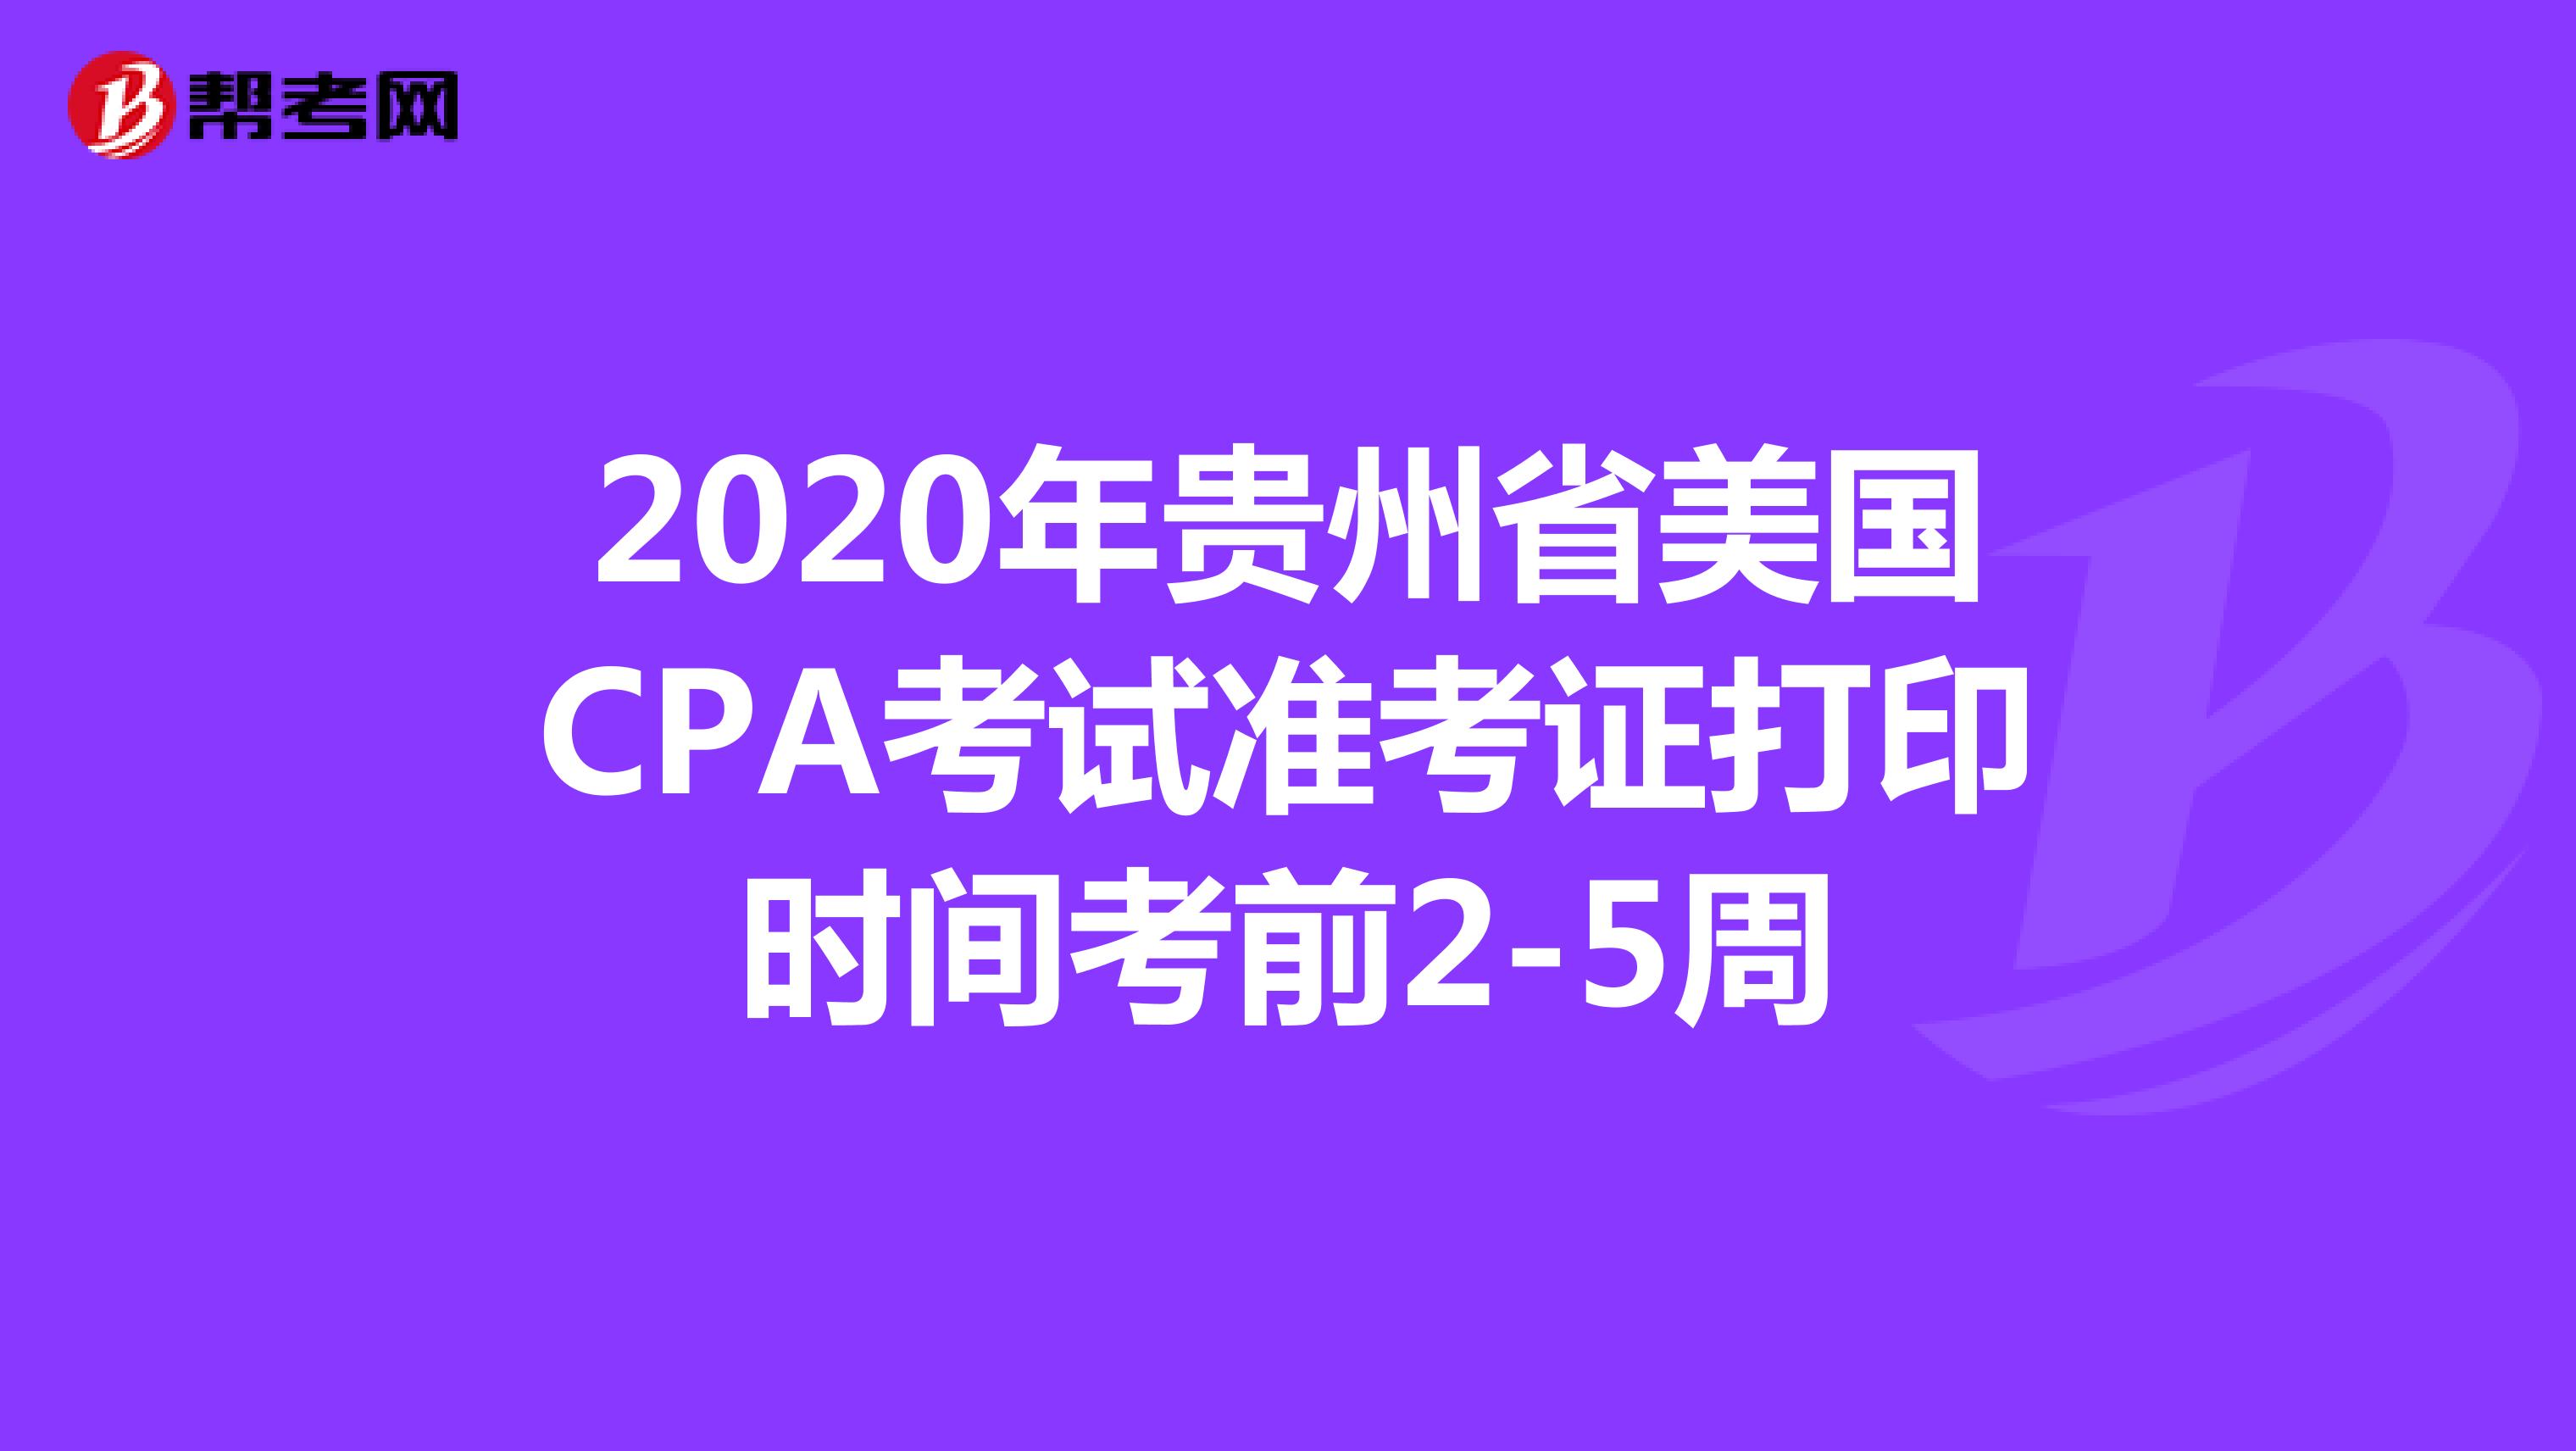 2020年贵州省美国CPA考试准考证打印时间考前2-5周